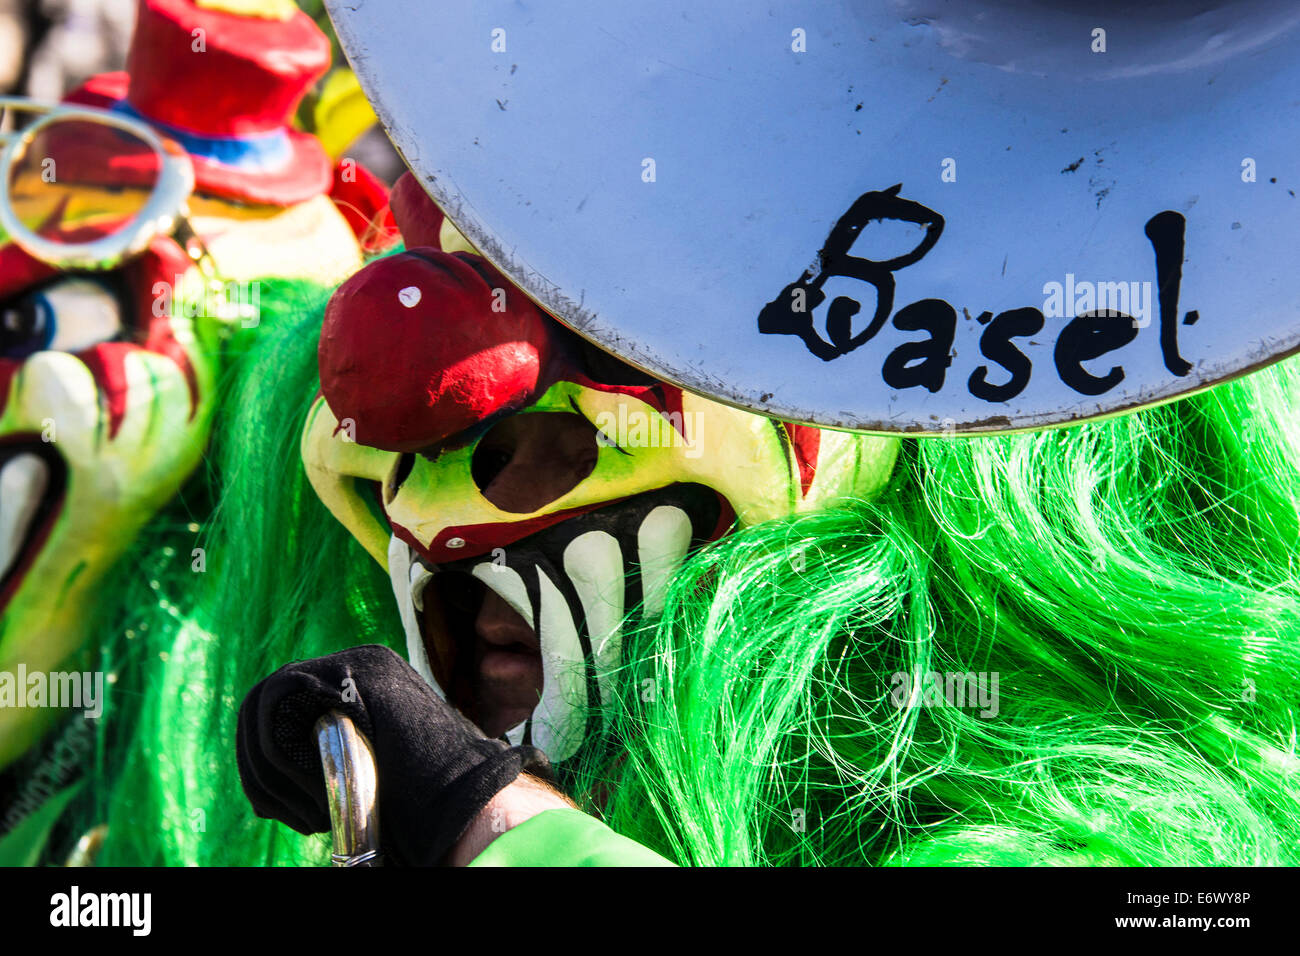 Masques colorés au carnaval, Carnaval de Bâle, le canton de Bâle, Suisse Banque D'Images